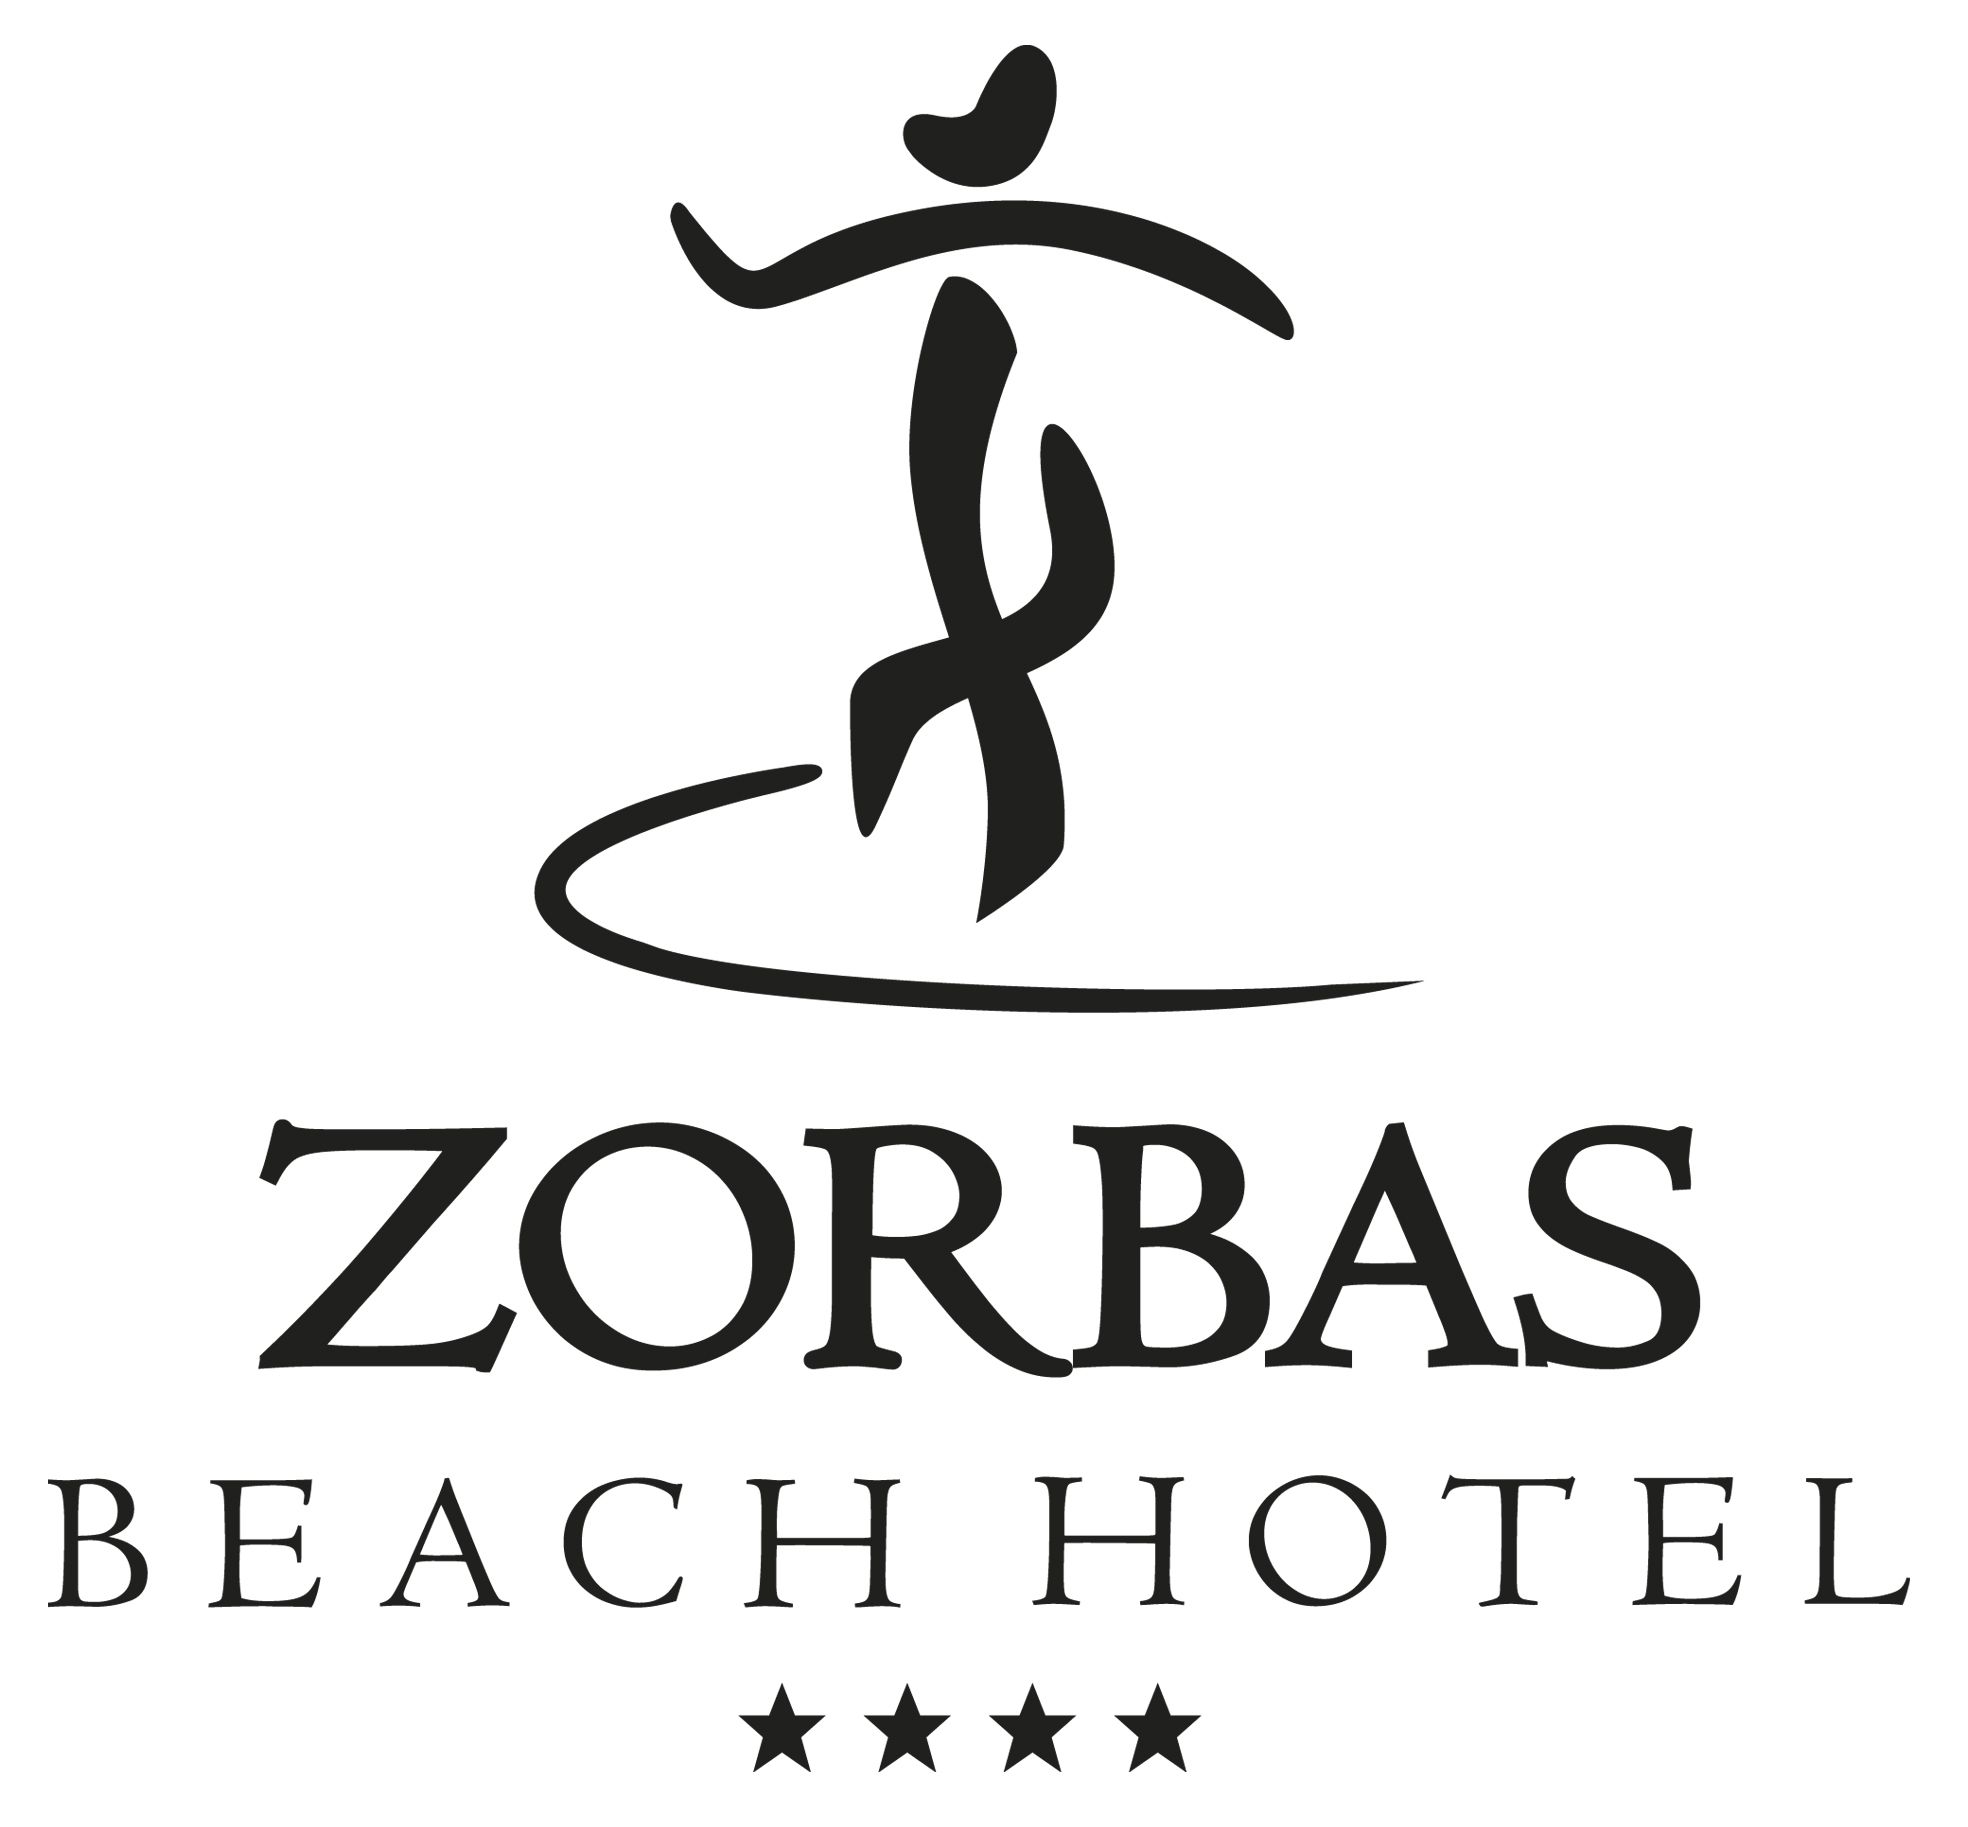 Από το ξενοδοχείο Zorbas ζητείται προσωπικό